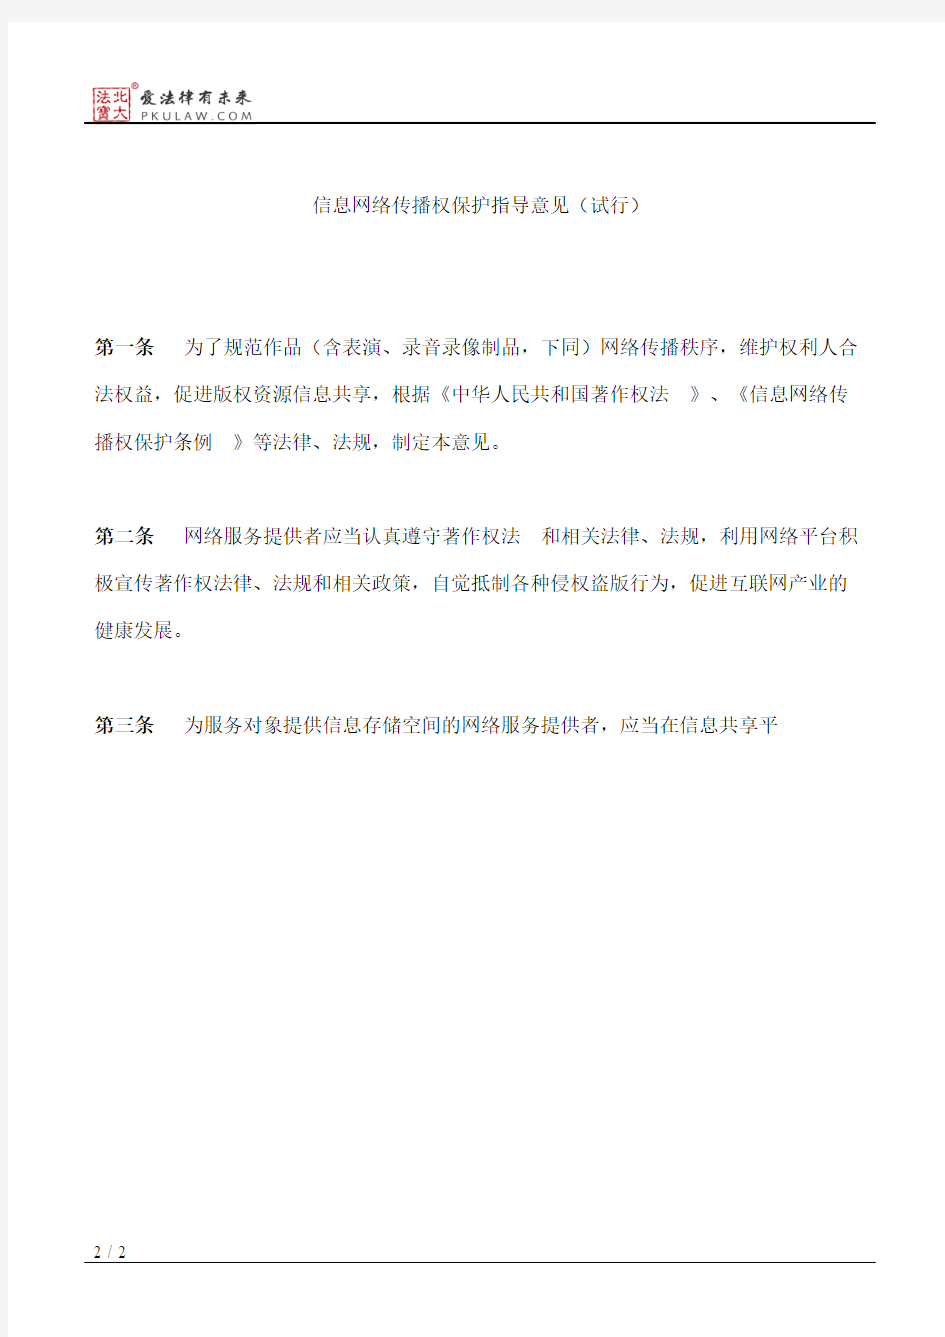 北京市新闻出版局关于发布《信息网络传播权保护指导意见(试行)》的通知